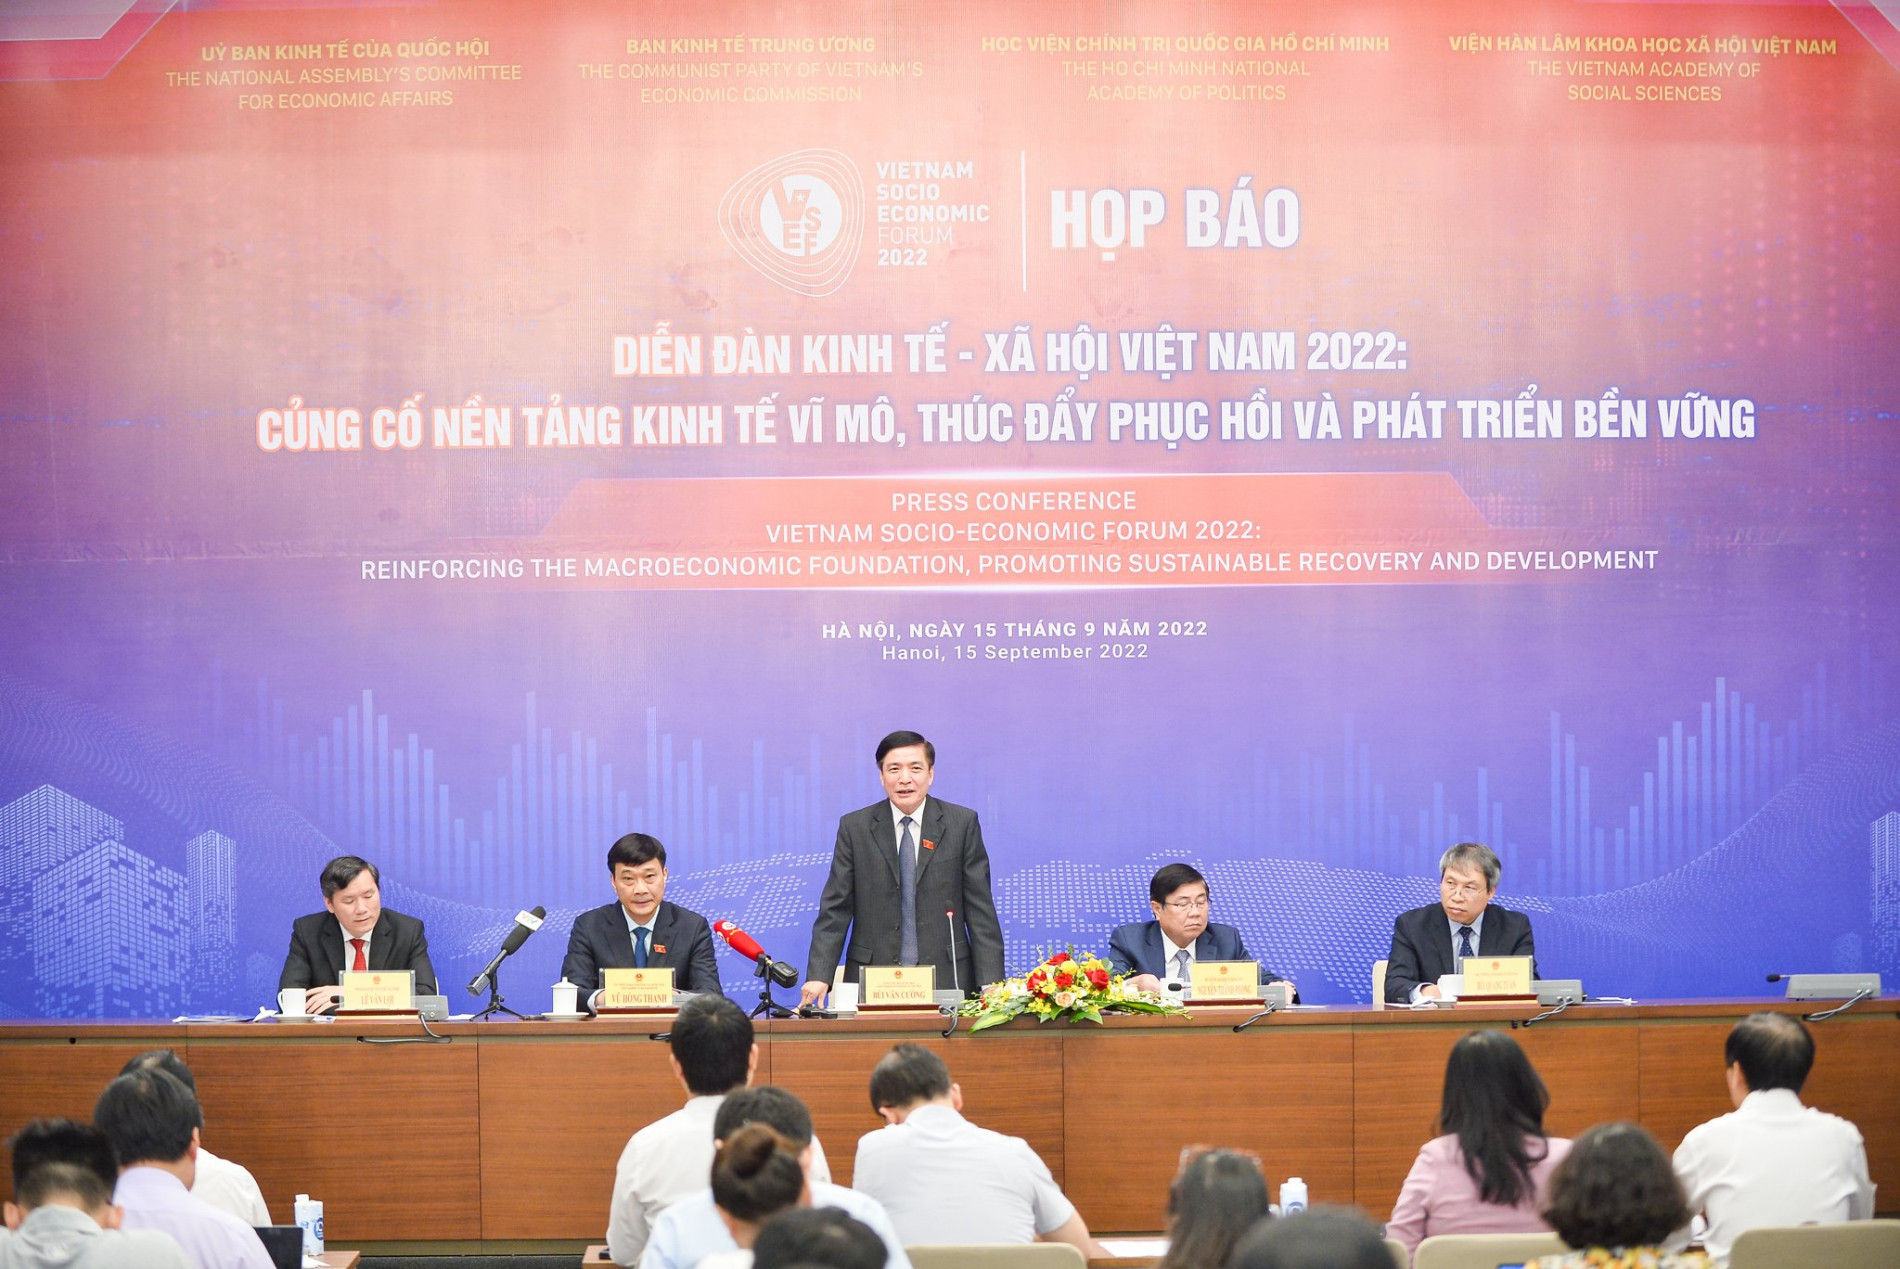 Ngày 18/9 tổ chức Diễn đàn Kinh tế - Xã hội Việt Nam 2022 - Ảnh 1.